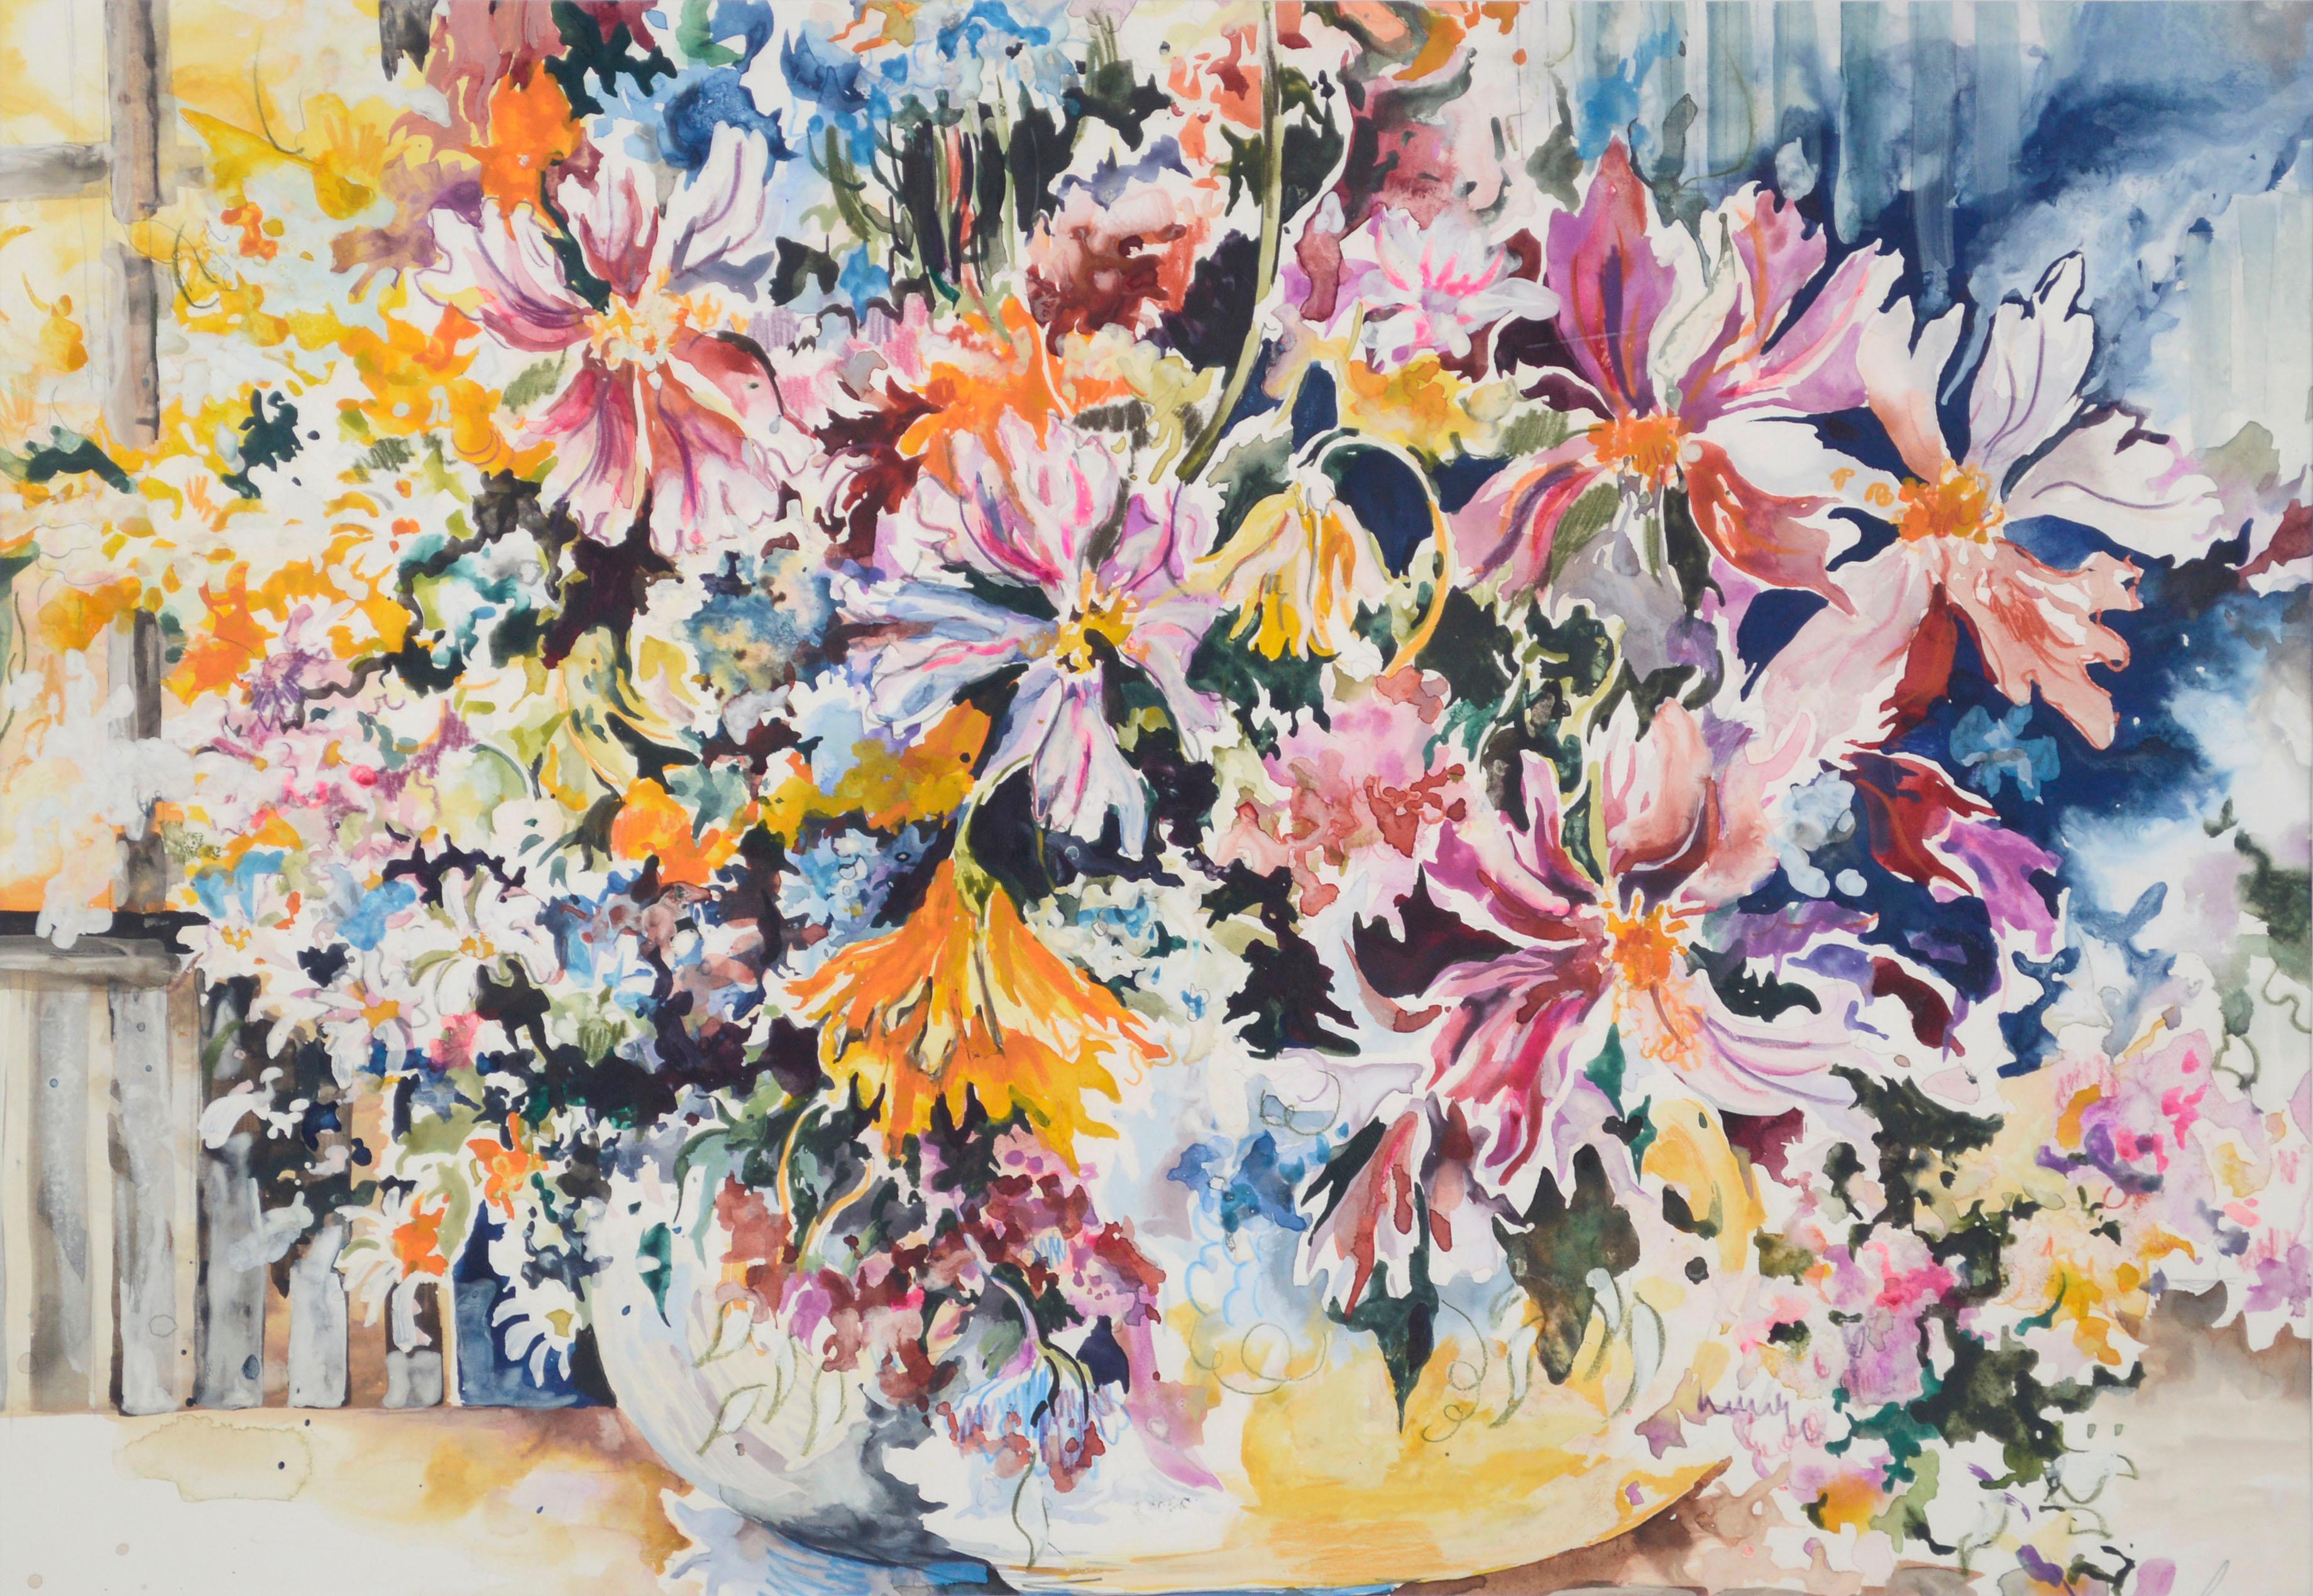 Frühlingsblumenstrauß, großformatiges florales Aquarell-Stillleben  (Amerikanischer Impressionismus), Art, von Royce Thyberg Gordon